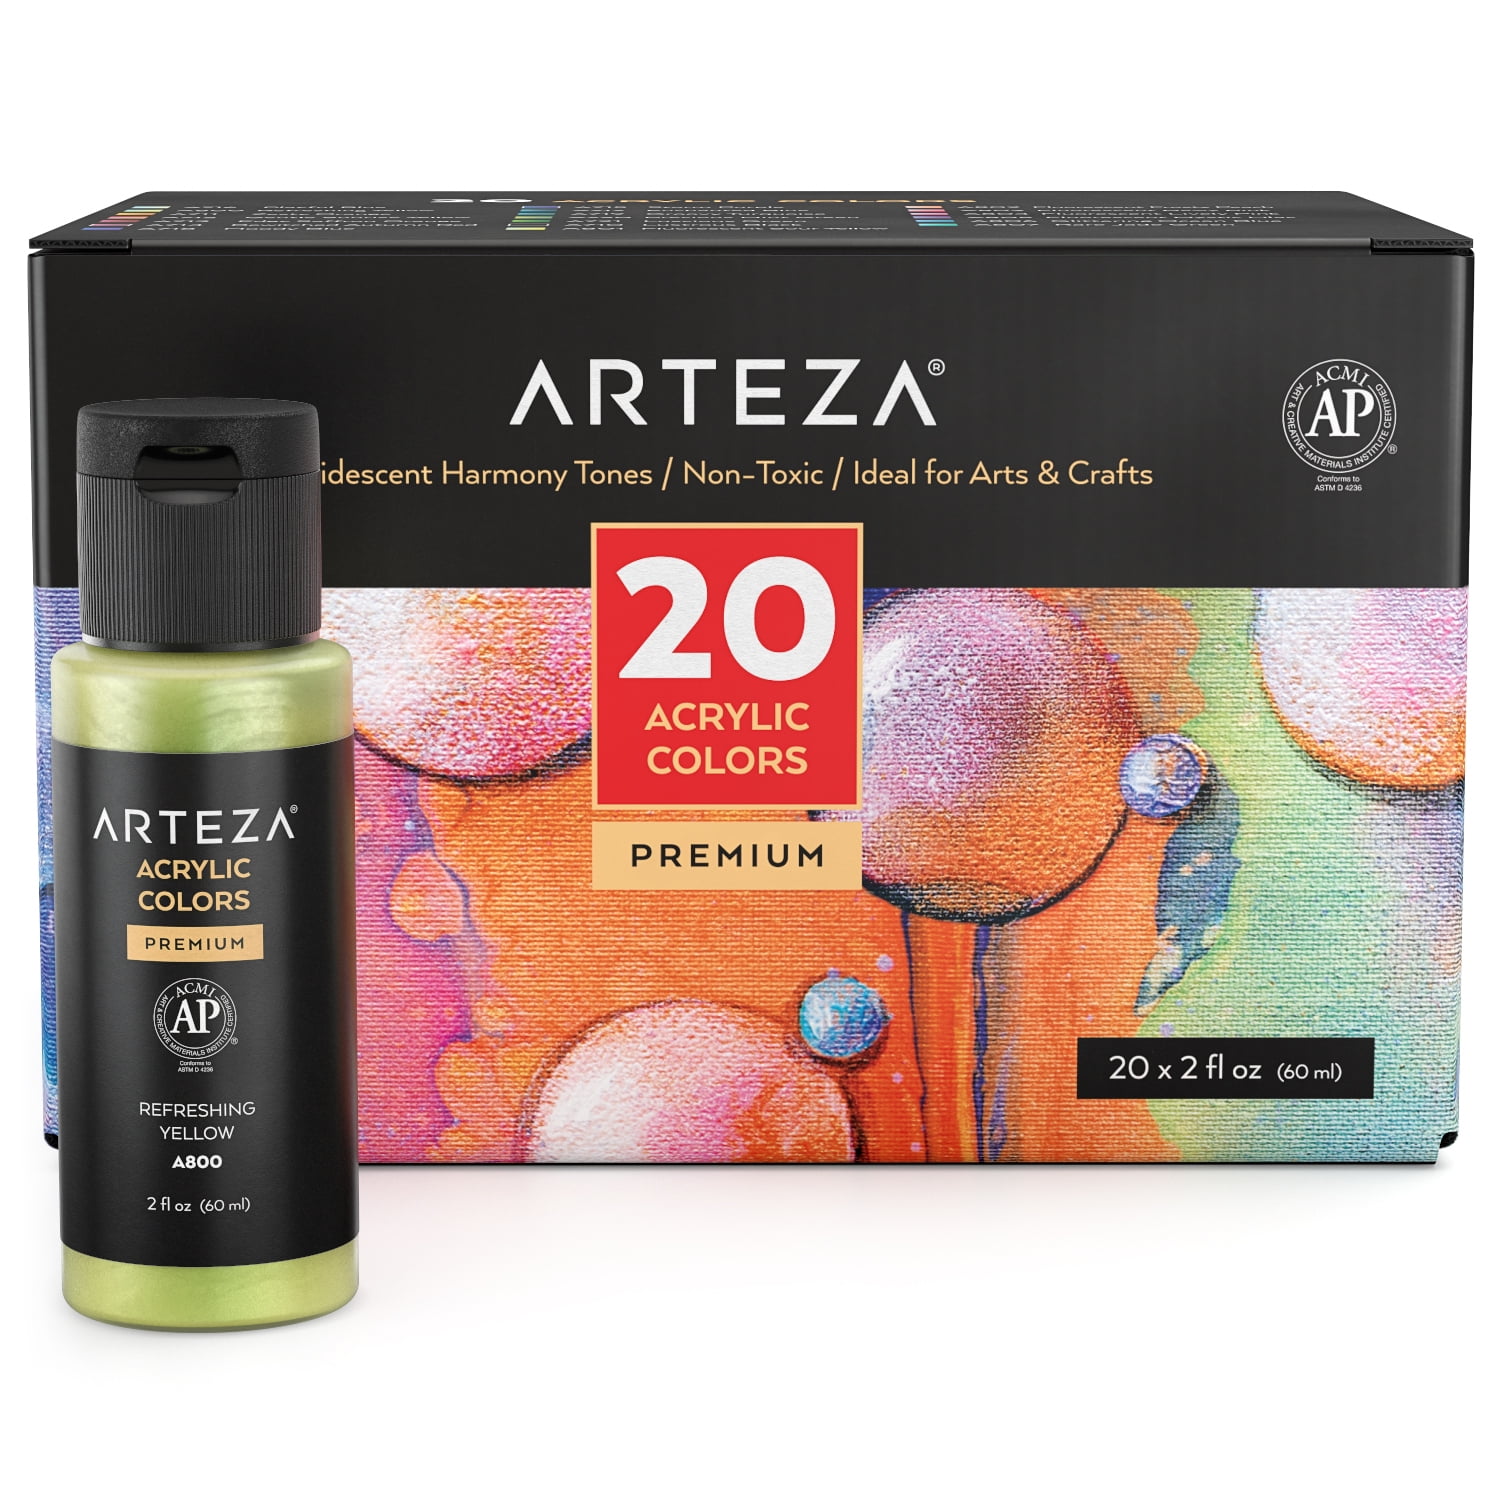 ARTZ-4098 Arteza Iridescent Acrylic Paint, Set Of 4, Candy Tones, 4 Fl Oz  Bottles, High-Flow Pouring Paint, Art Supplies For Canvas, Glass